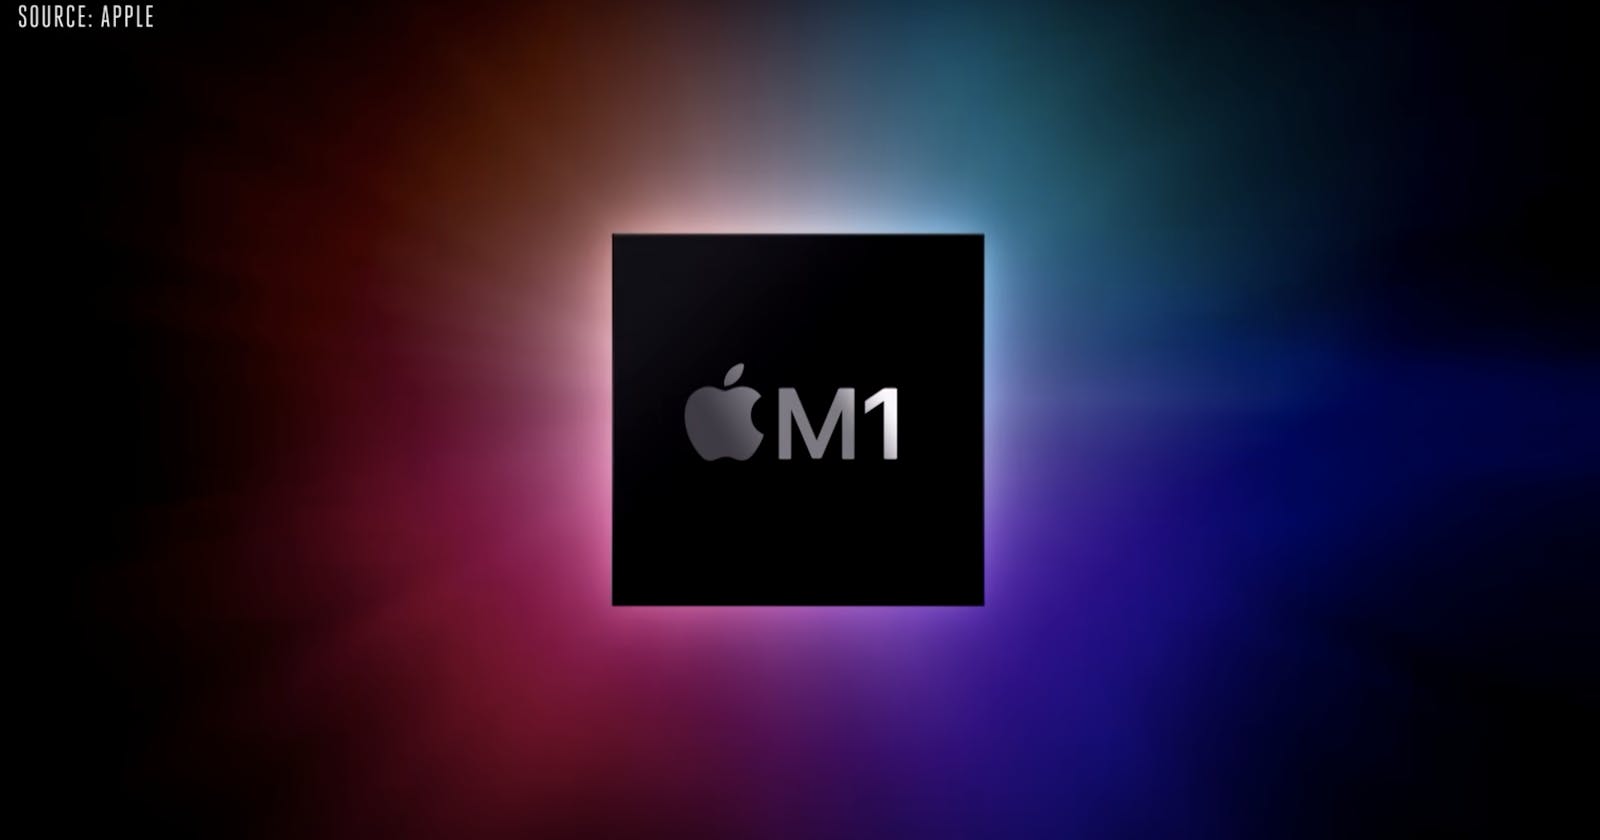 Tại sao chip M1 của Apple 🍏 lại nhanh đến vậy? Giải thích ngắn gọn